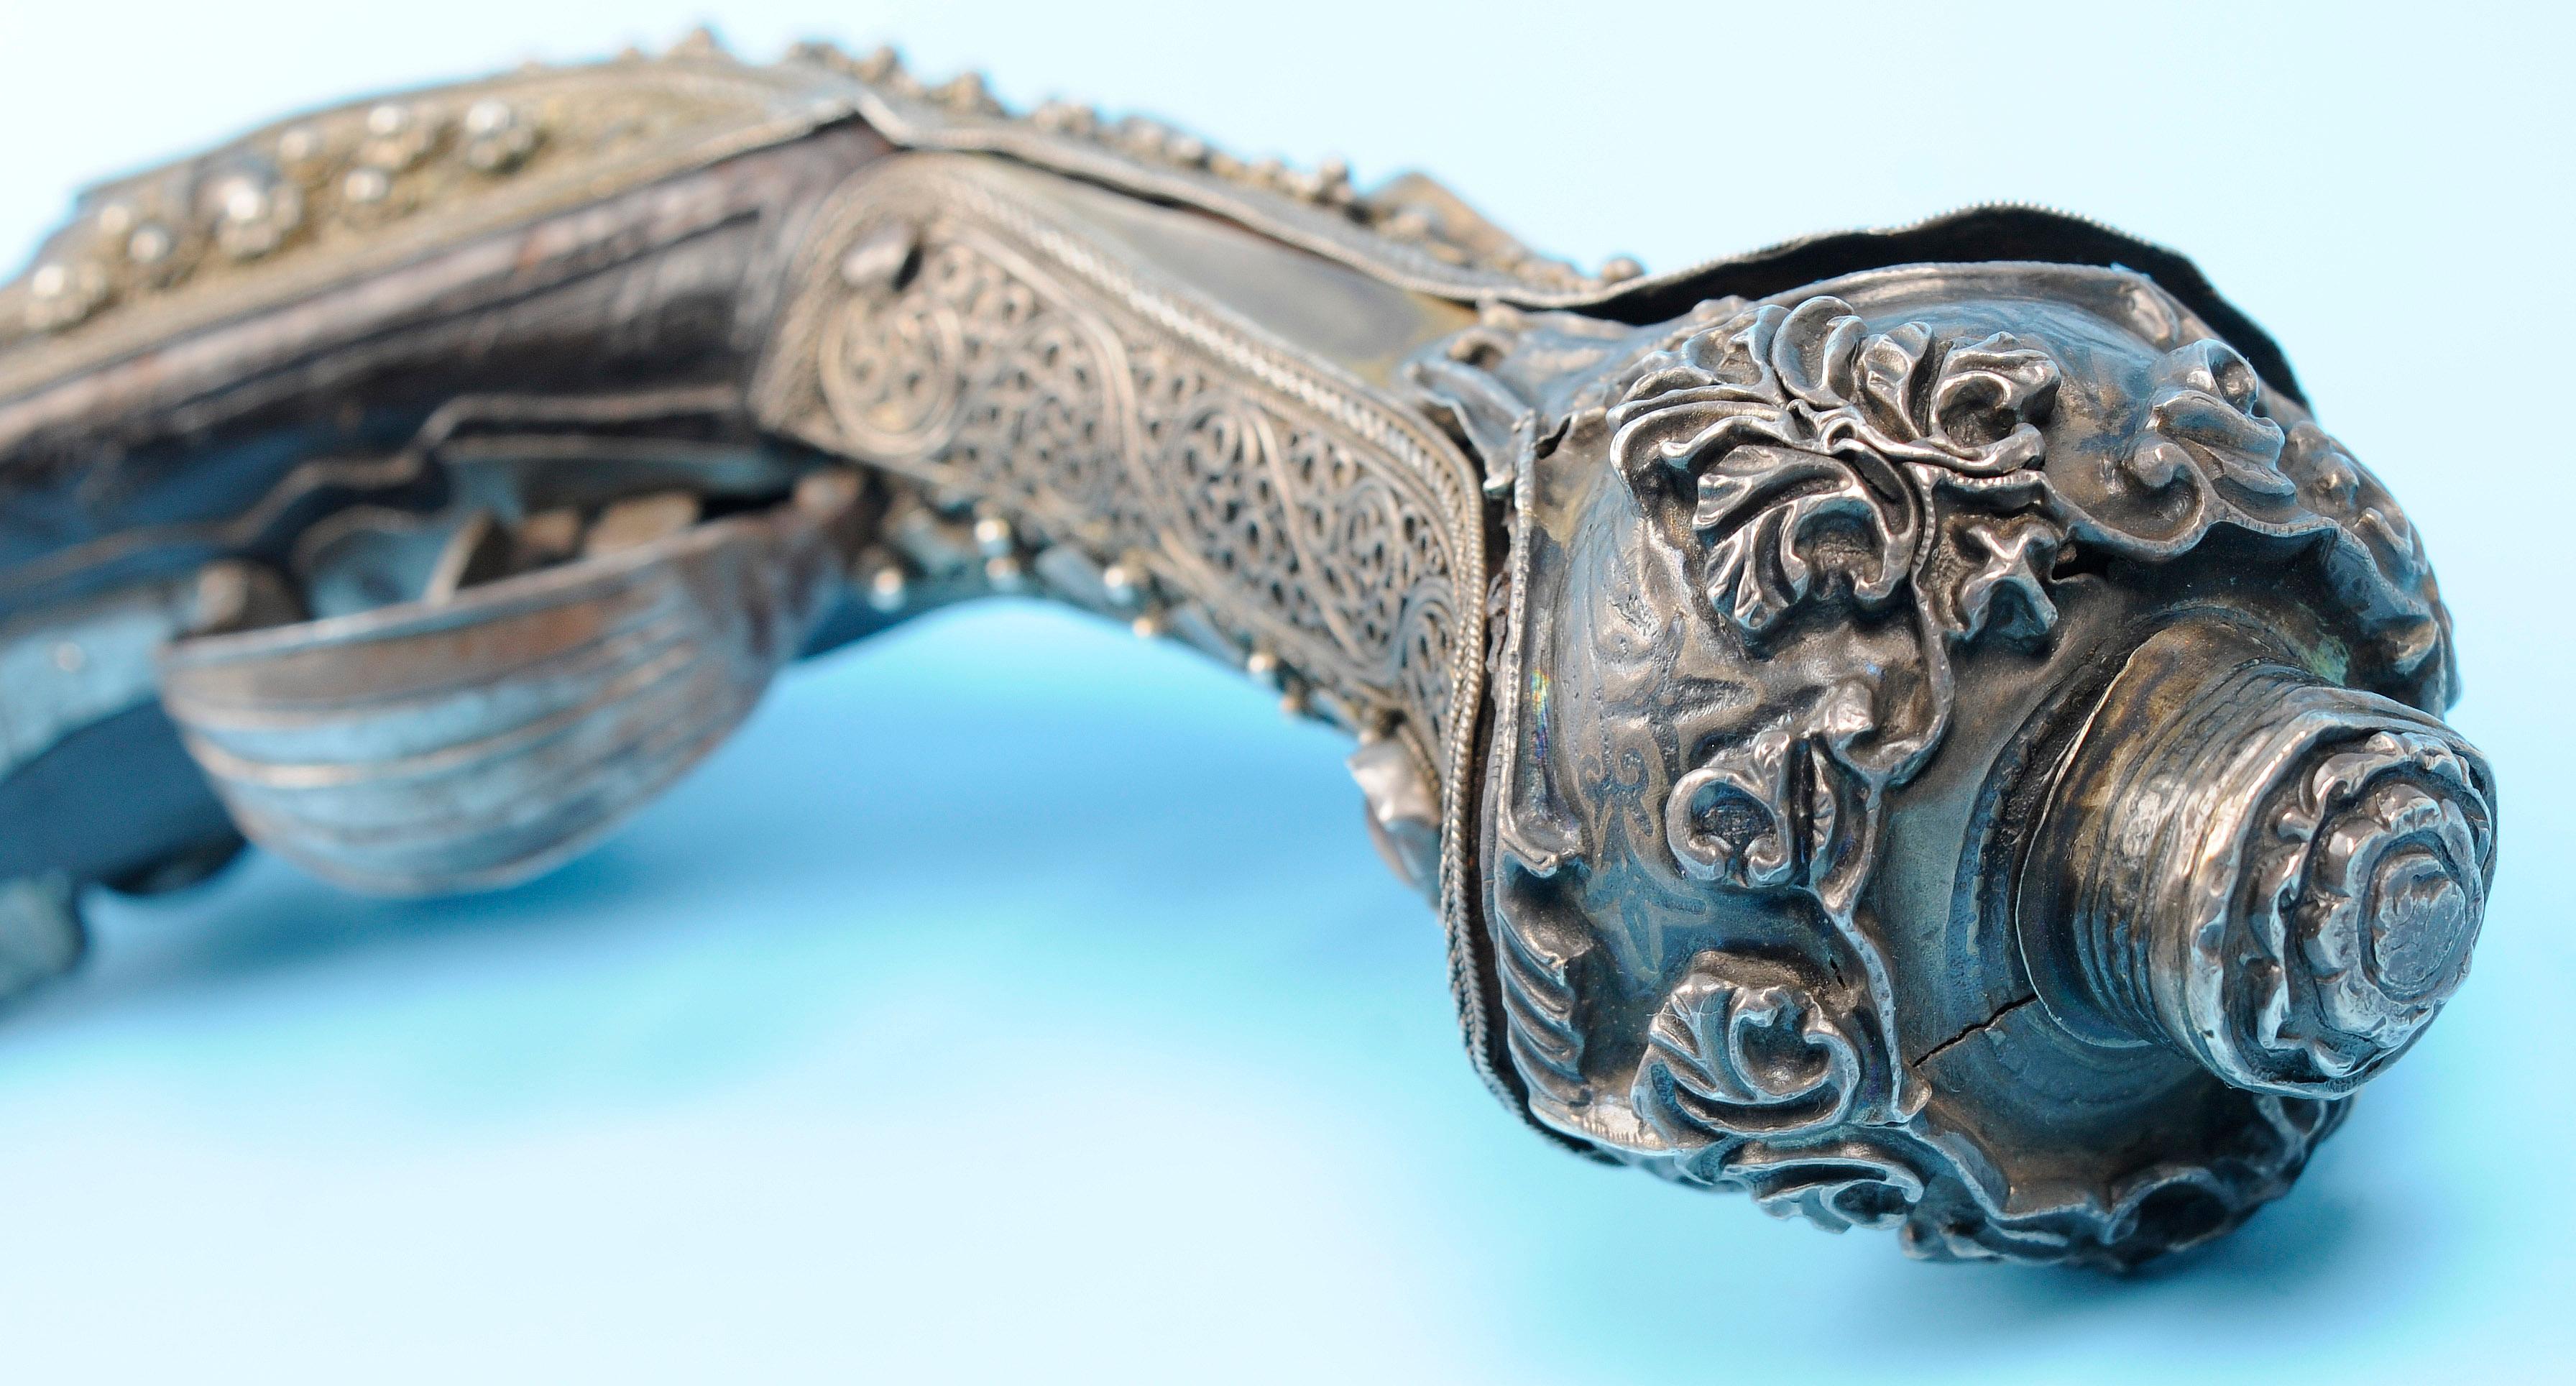 Ornate Antique Ottoman Flintlock Pistol - Antique - no FFL needed  (TMT 1)